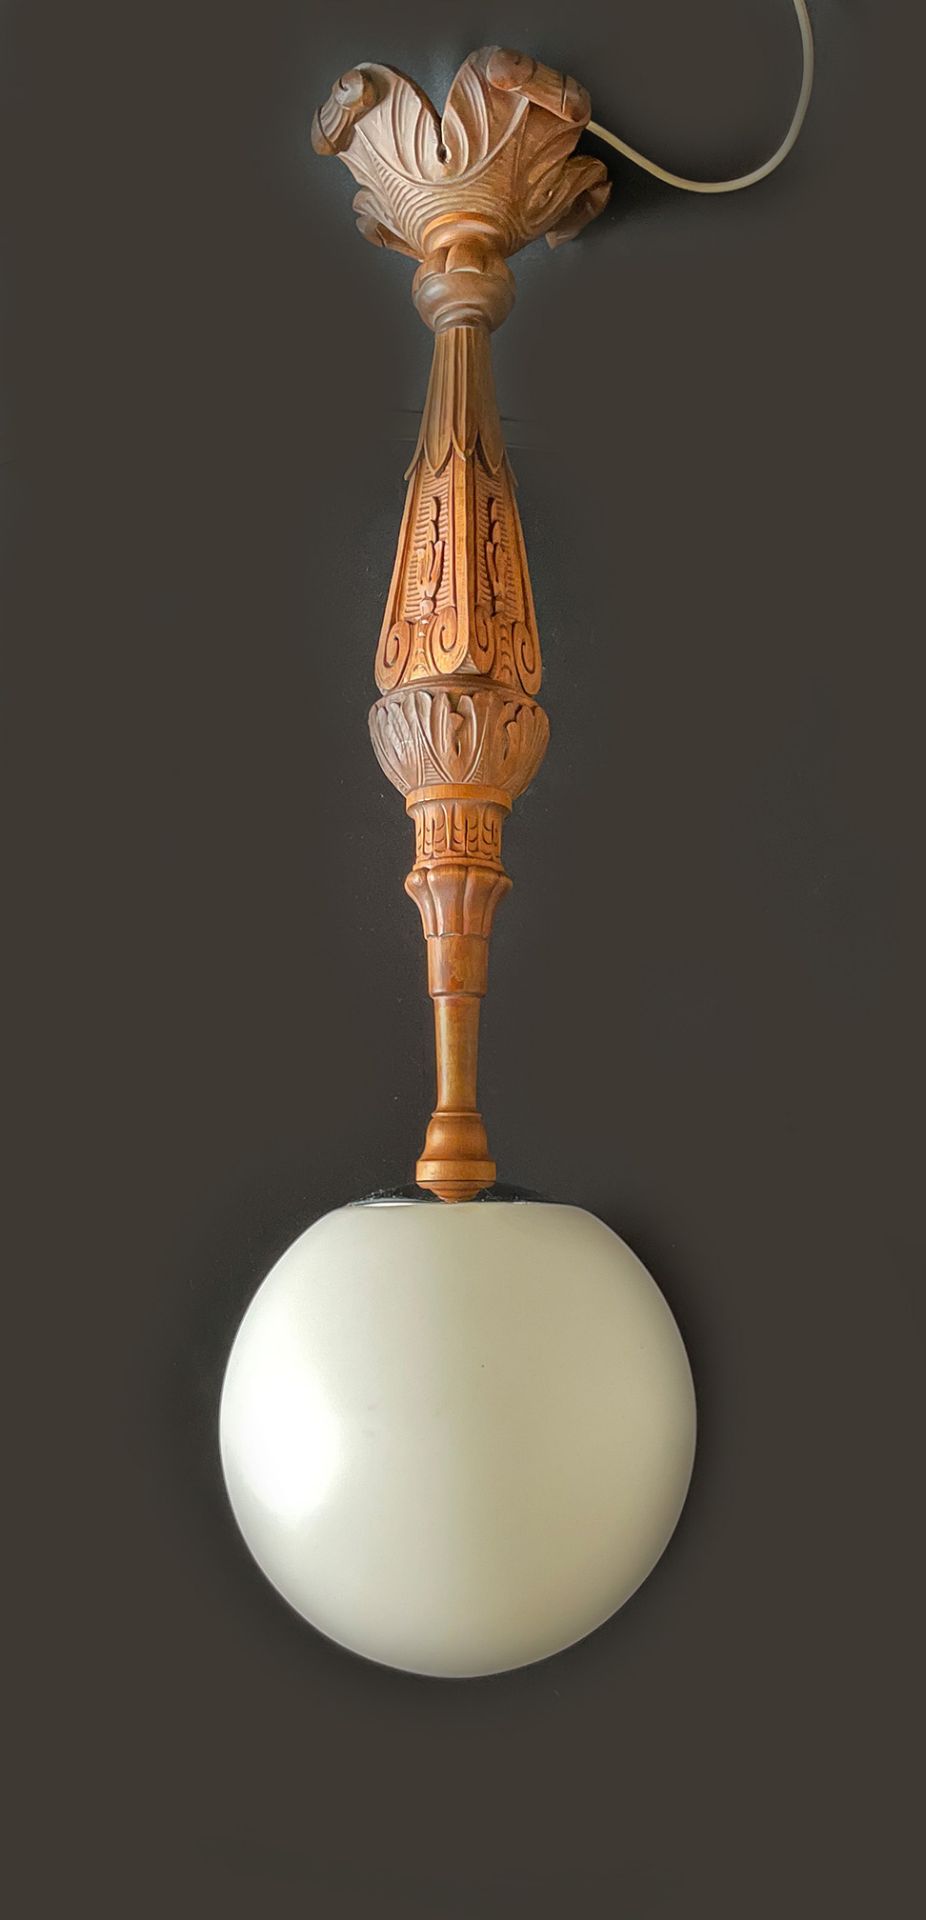 Hängelampe Gründerzeit, Holz, mit Glaskugel, elektrifiziert, Altersspuren, H. 110 cm, D. der Kugel